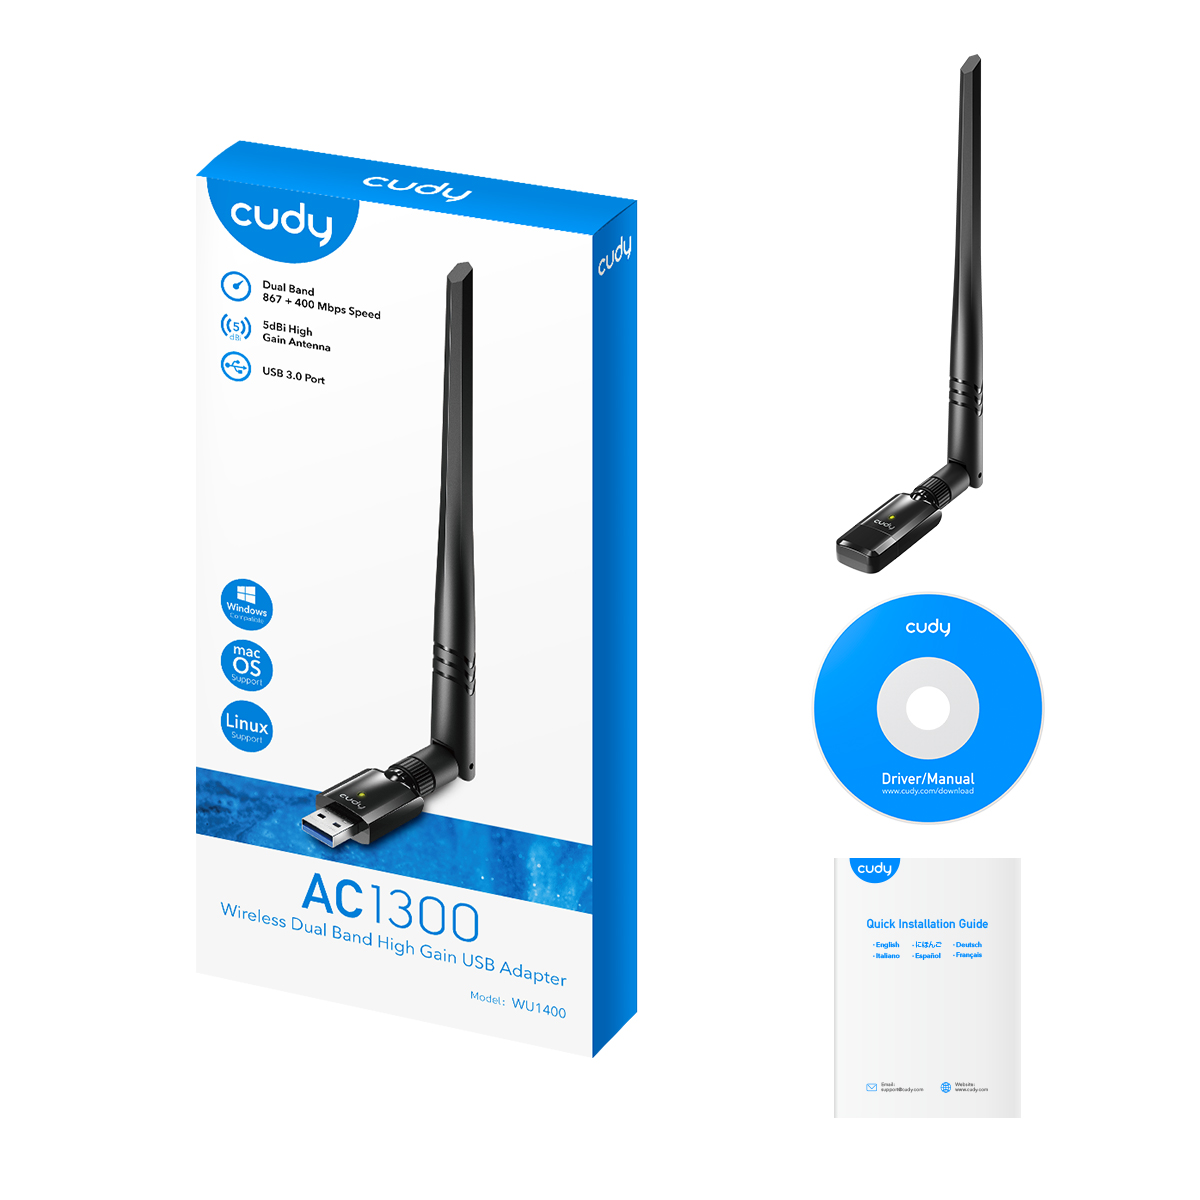 Cudy WU1400 Adaptateur réseau USB 3.0 AC1300 Wi-Fi double bande - Jusqu'à 867 Mbps en 5 GHz - Antenne à gain élevé